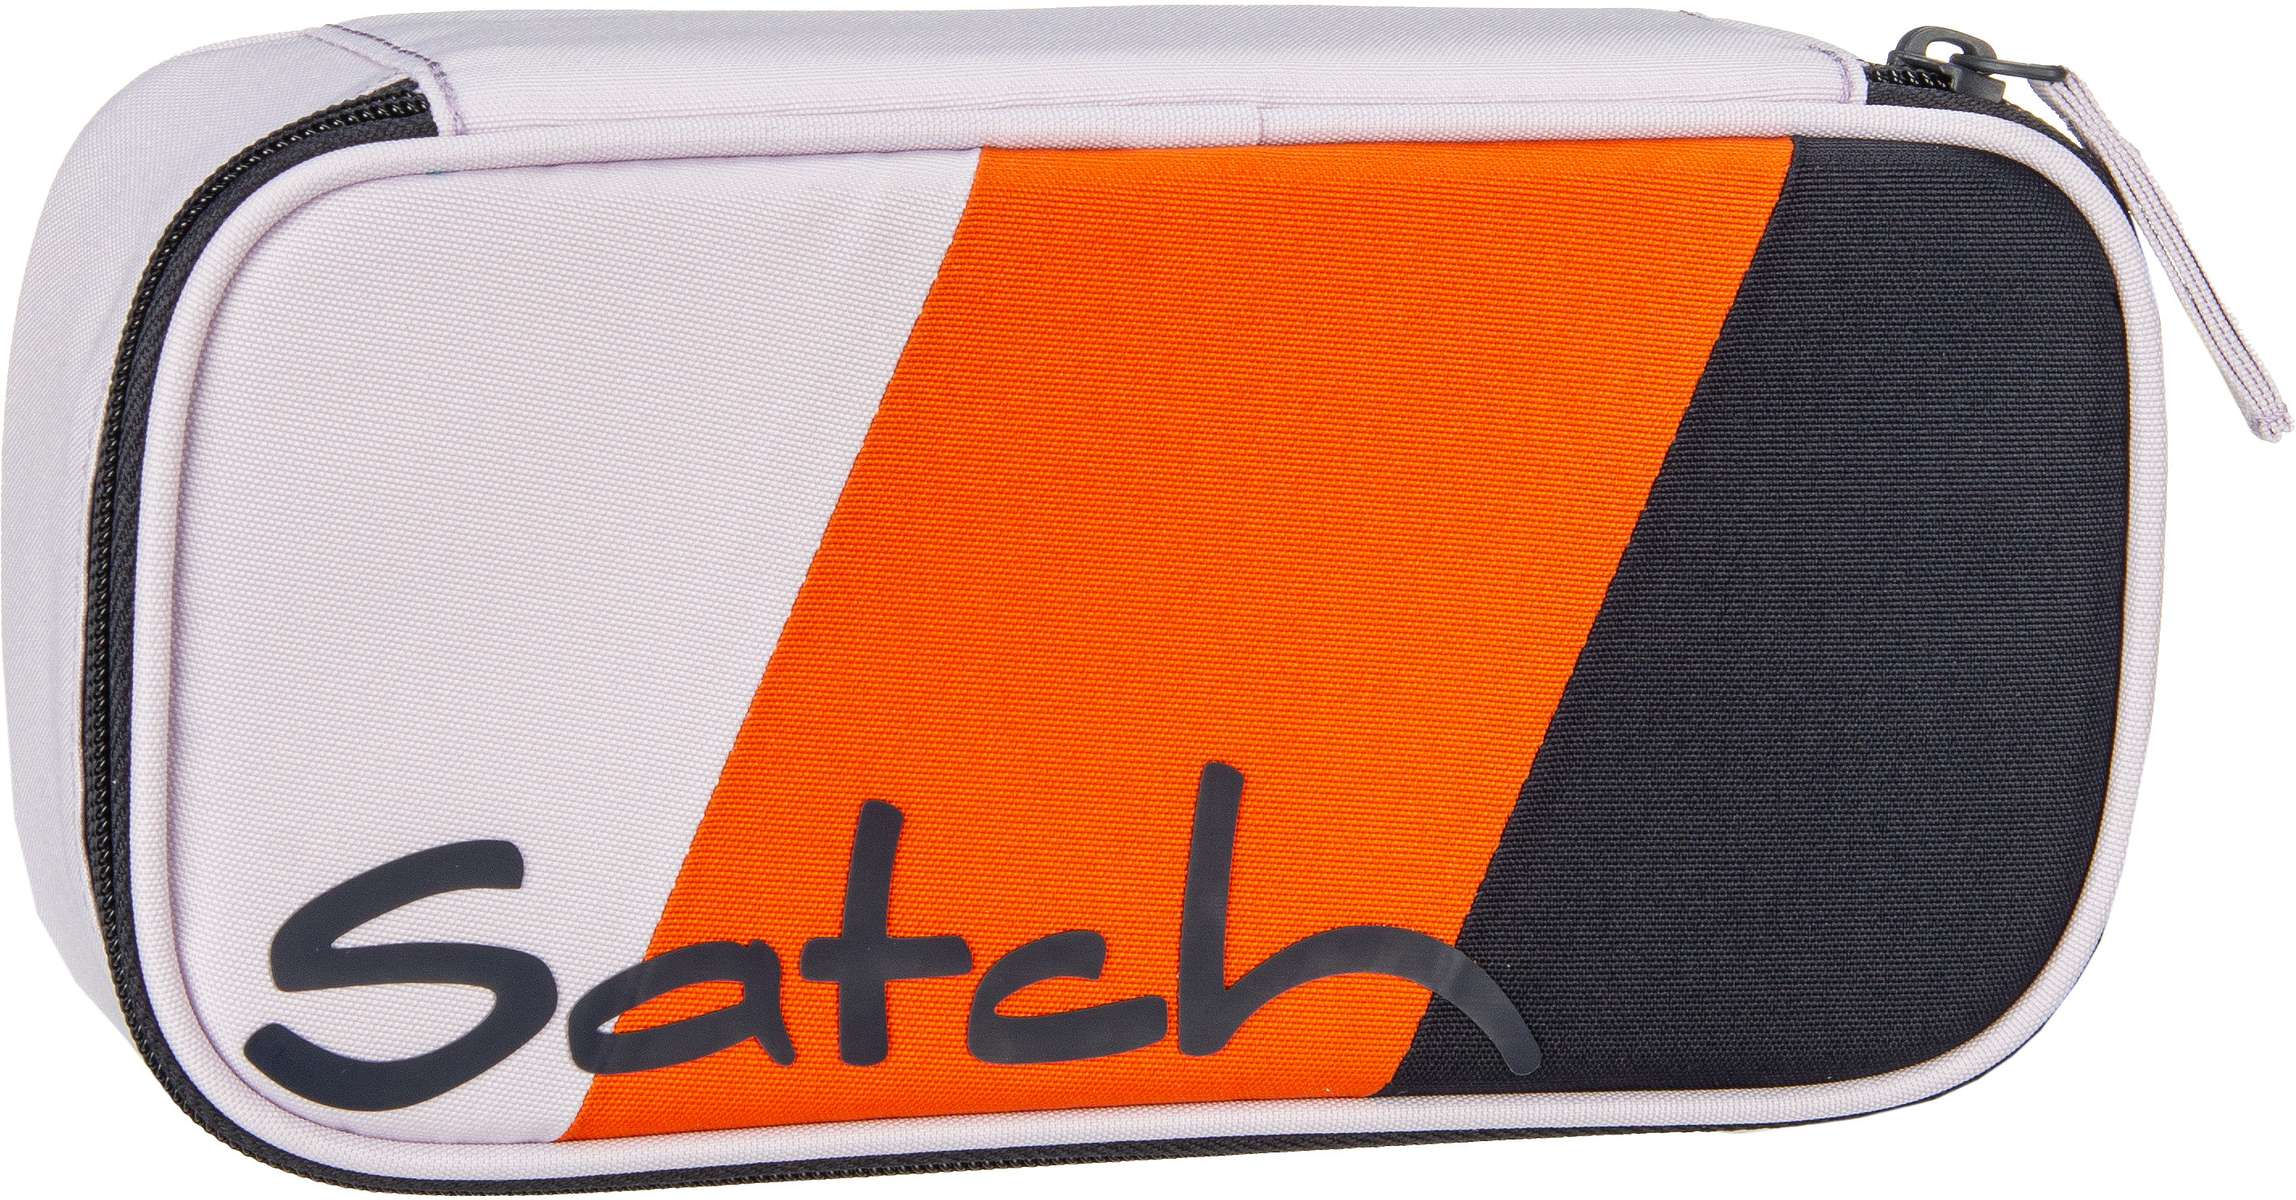 satch  satch Schlamperbox Edition - Federmappe - Mehrfarbig (Sun Catcher)